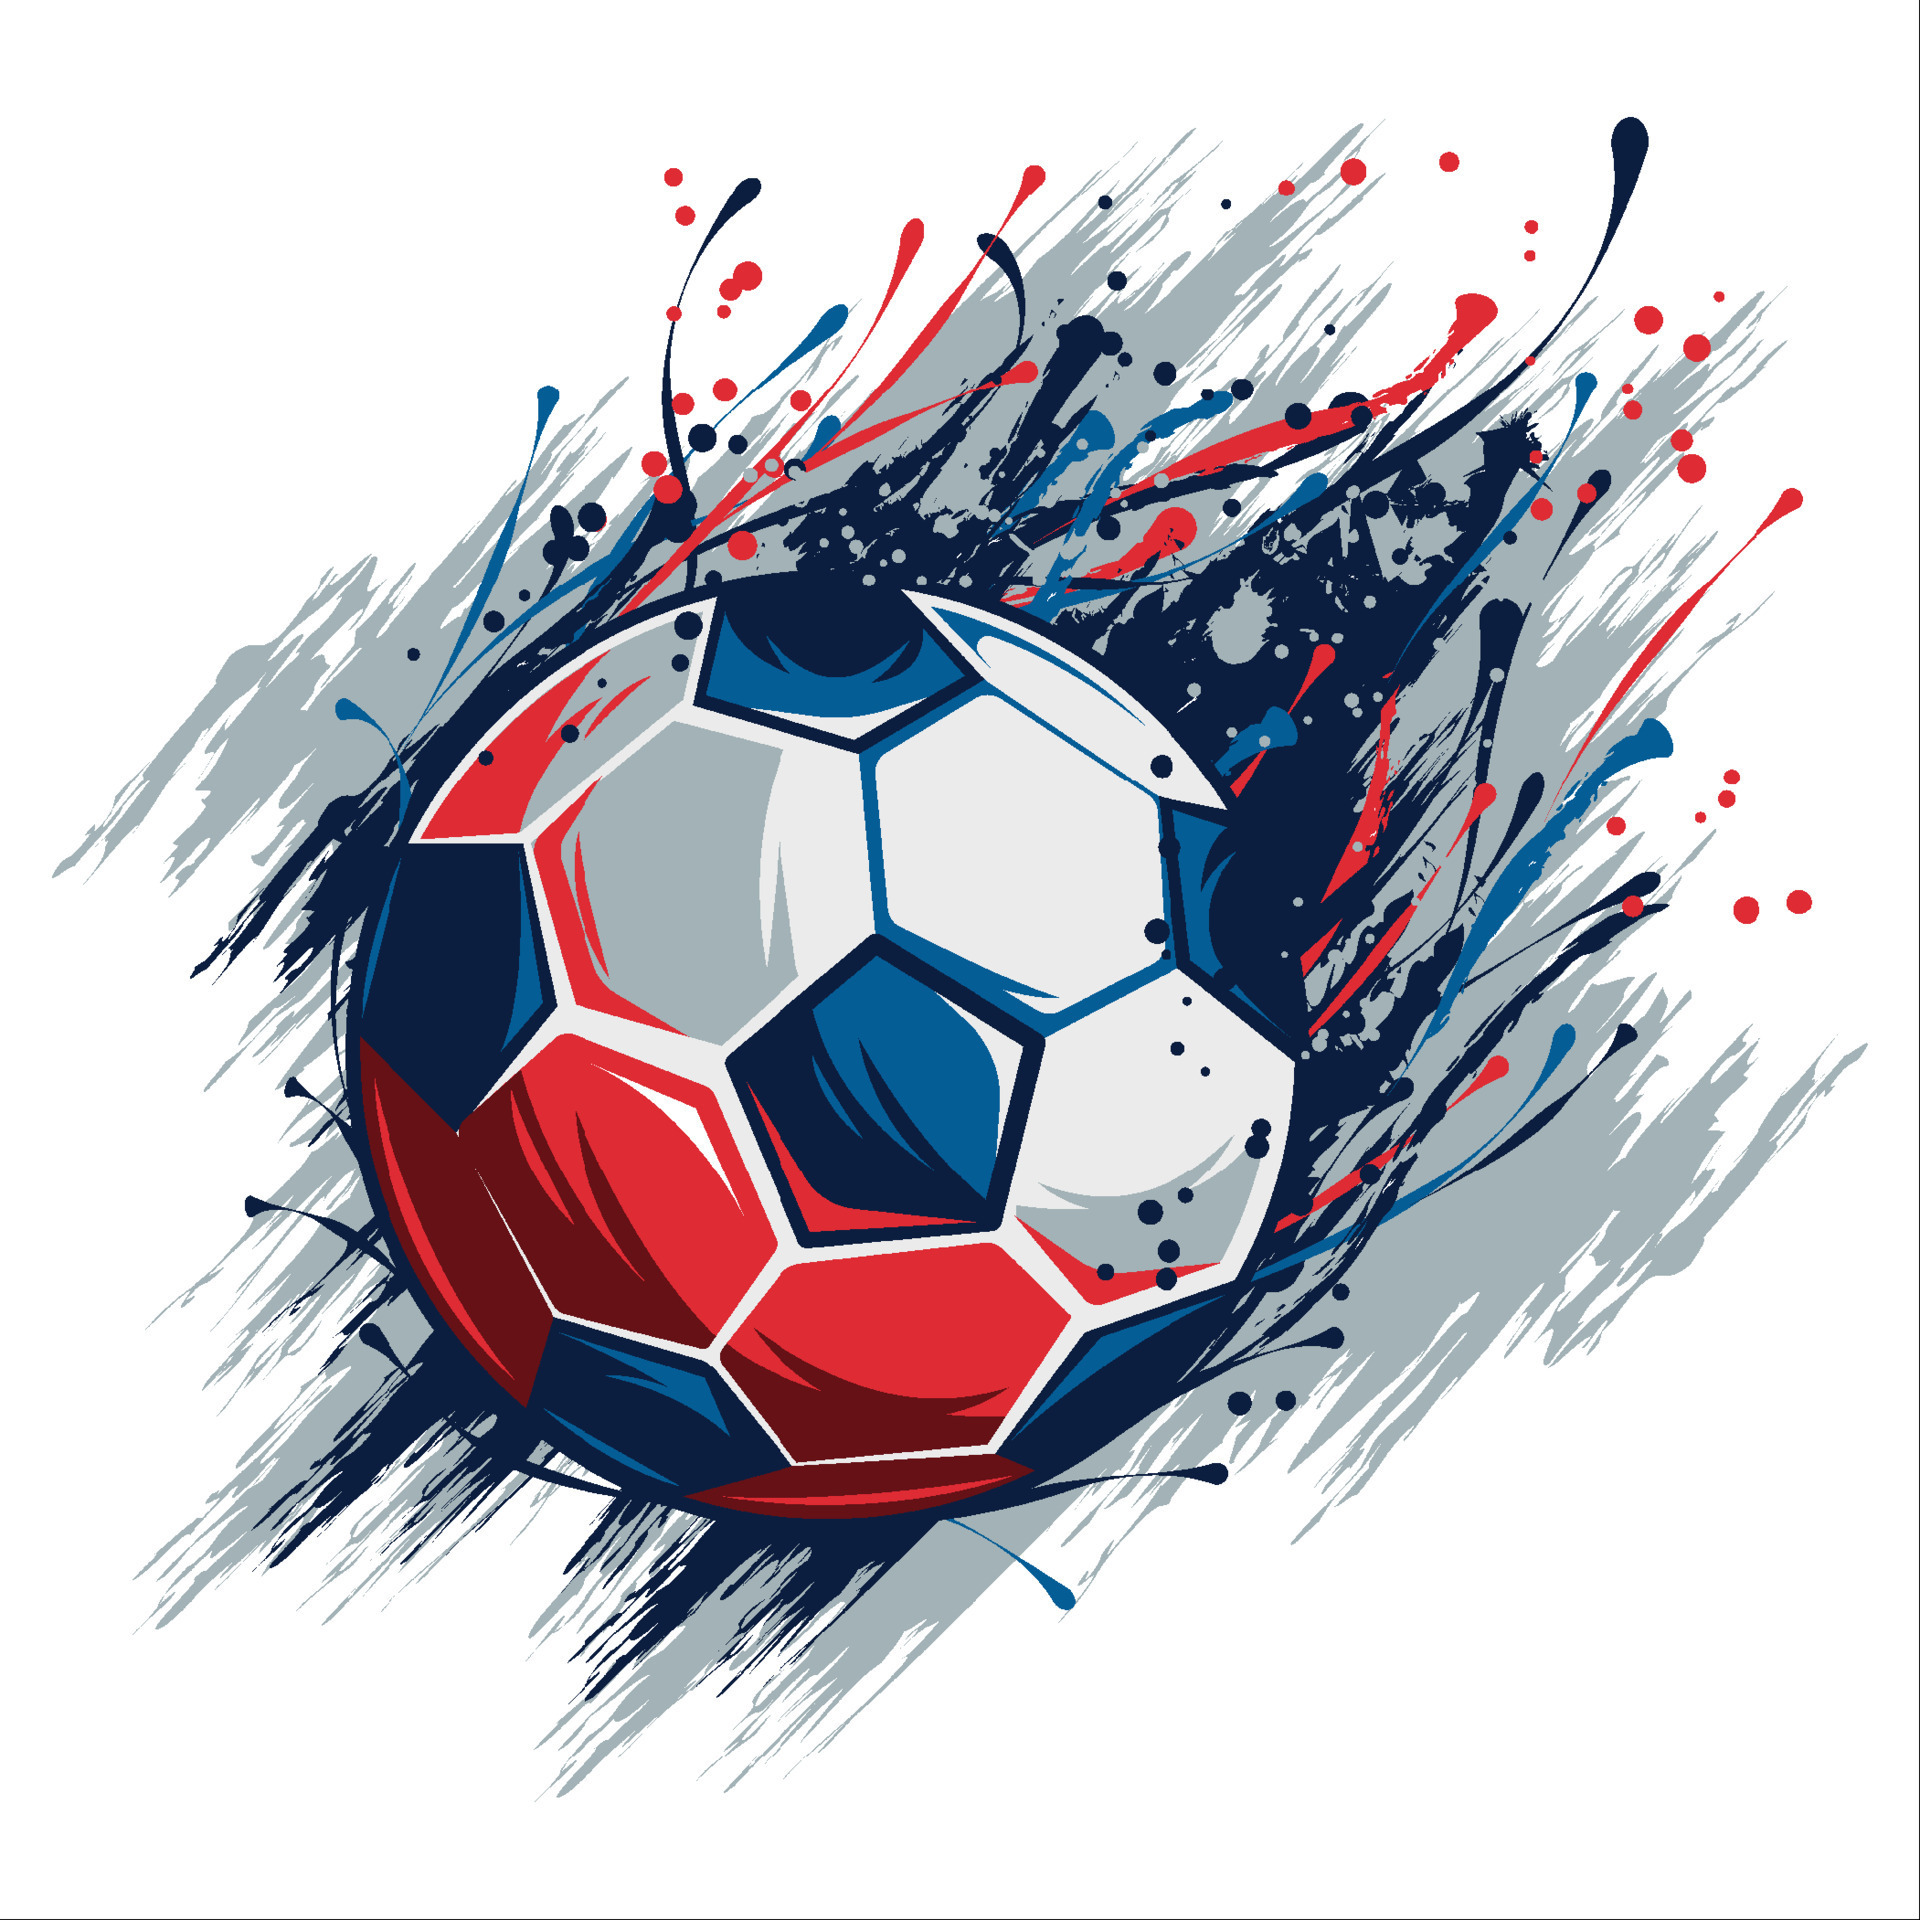 Imagem gratuita: colorido, futebol, bola de futebol, bola, futebol, jogo,  desporto, Campeonato, couro, gol